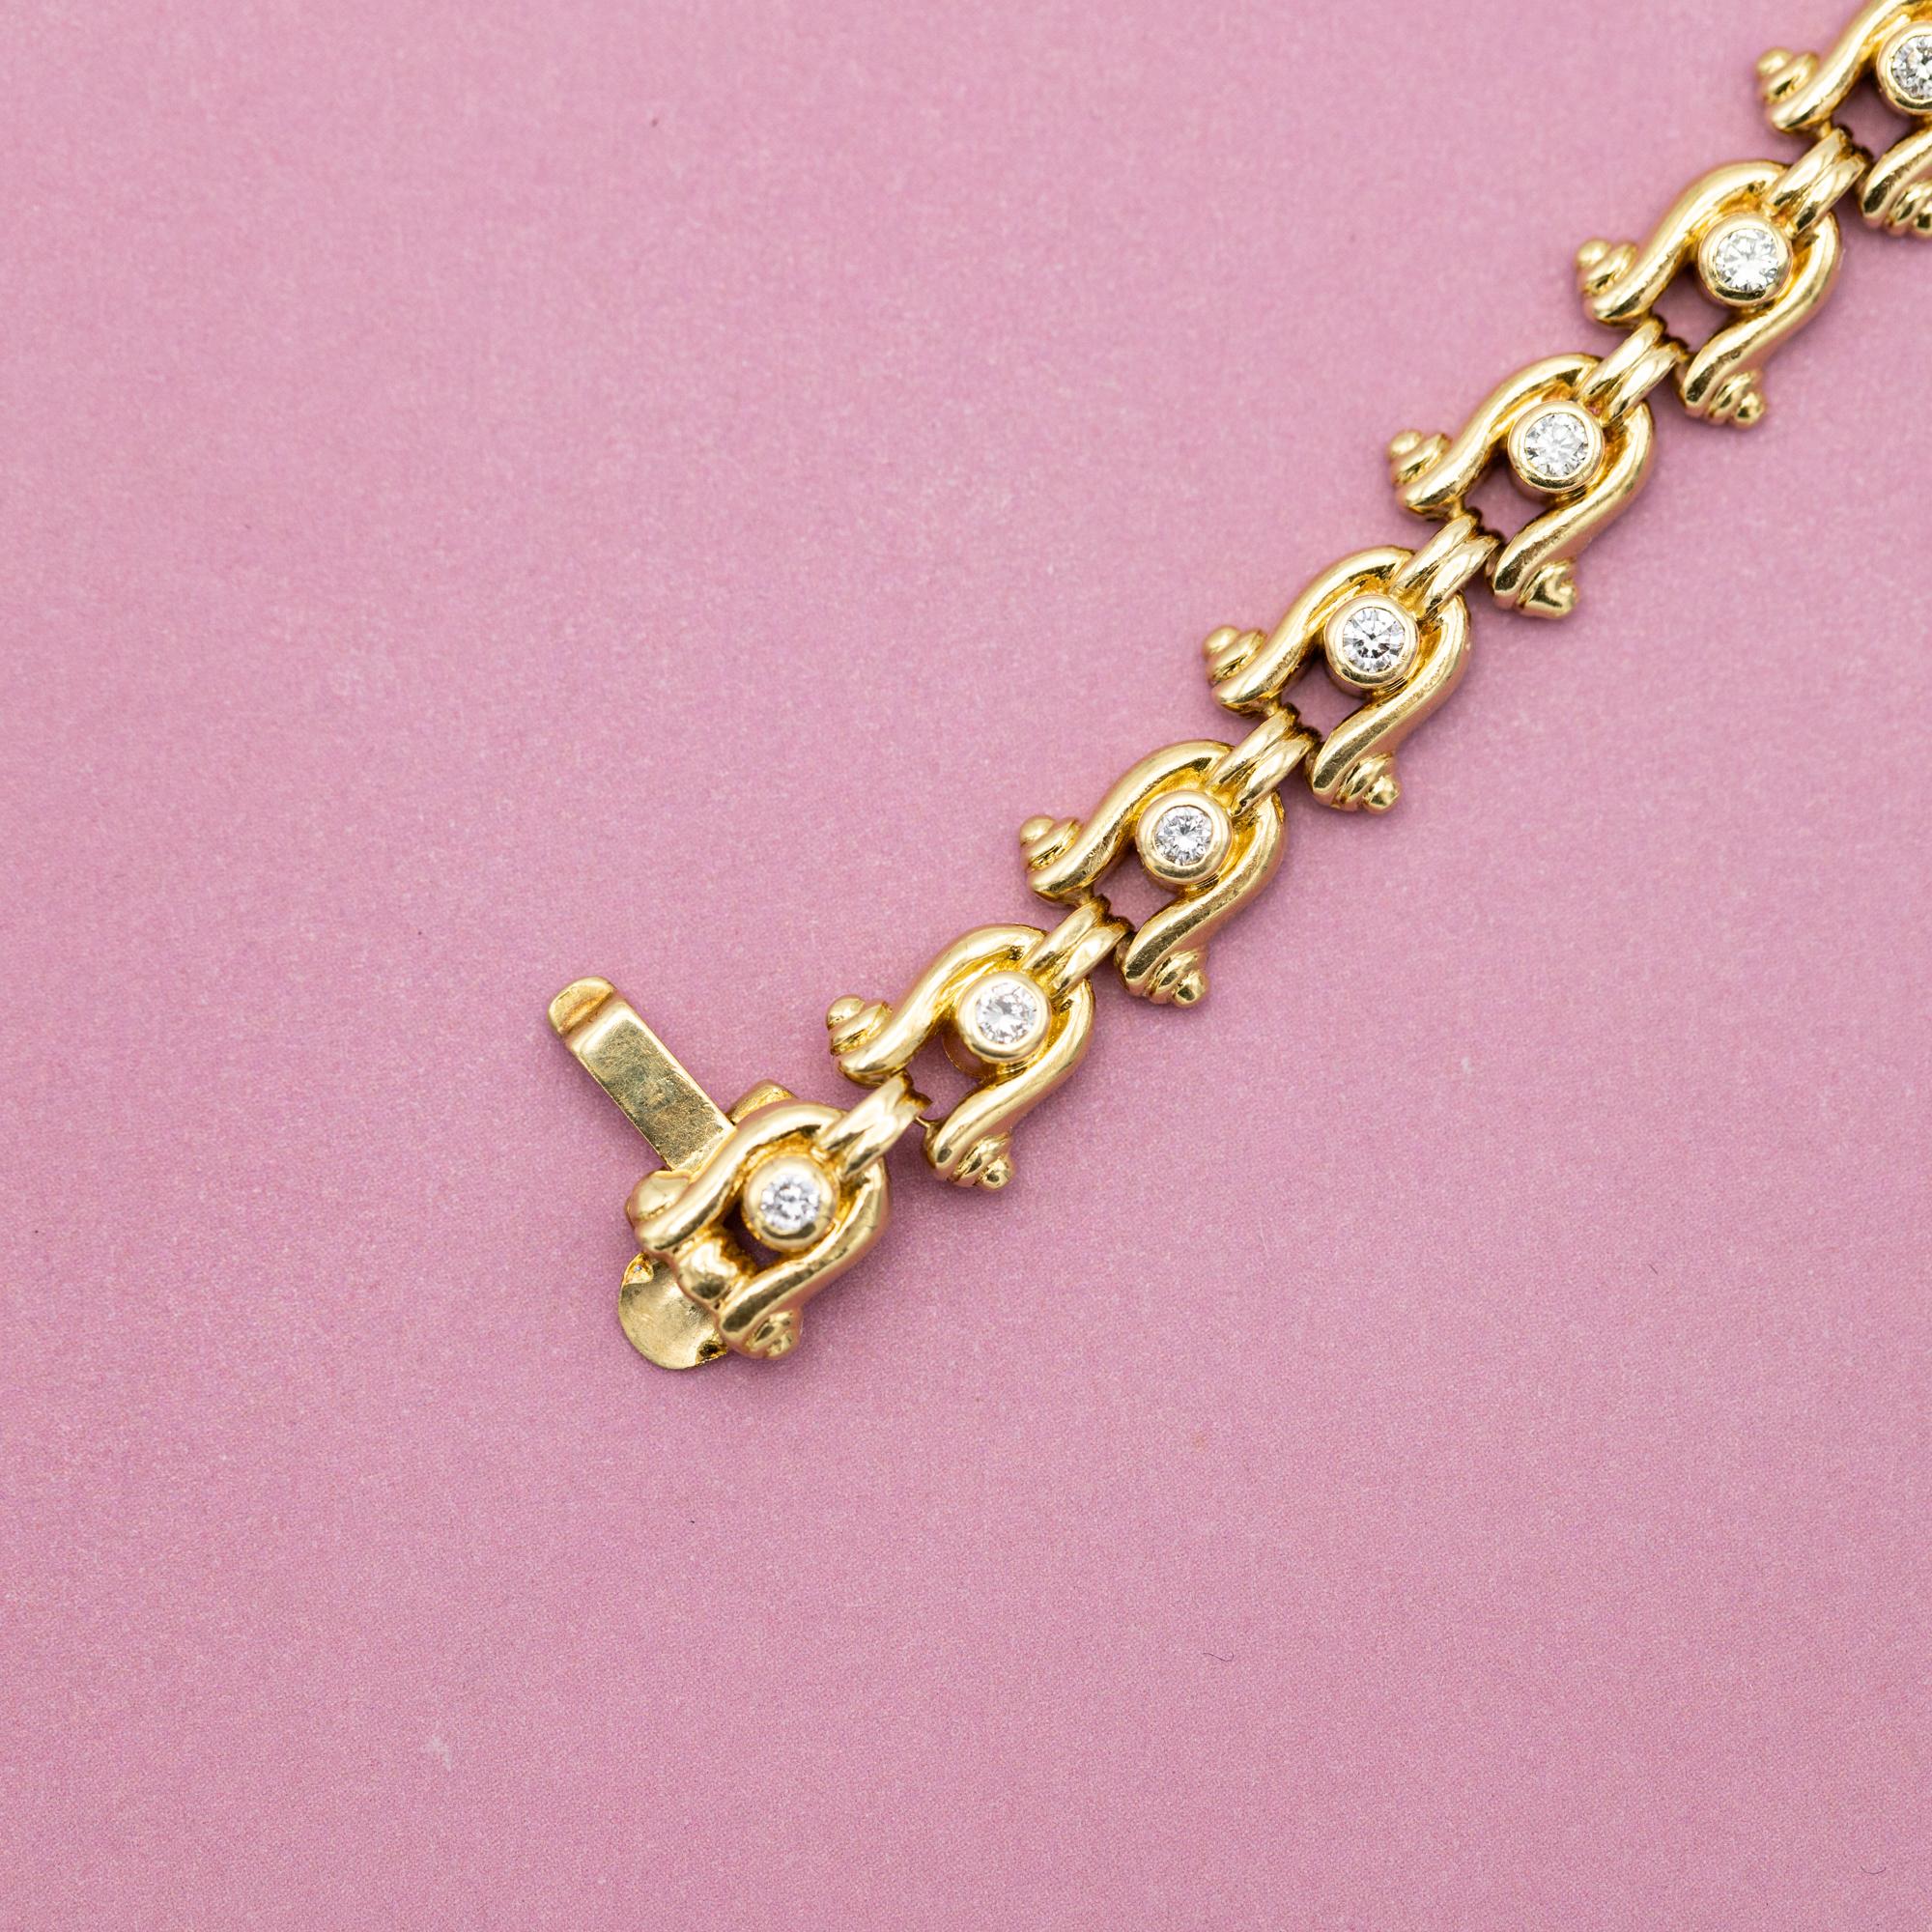 Bracelet tennis vintage en or jaune - Chaussures de cheval - 12,5 g - 0,62 carat de diamants 1